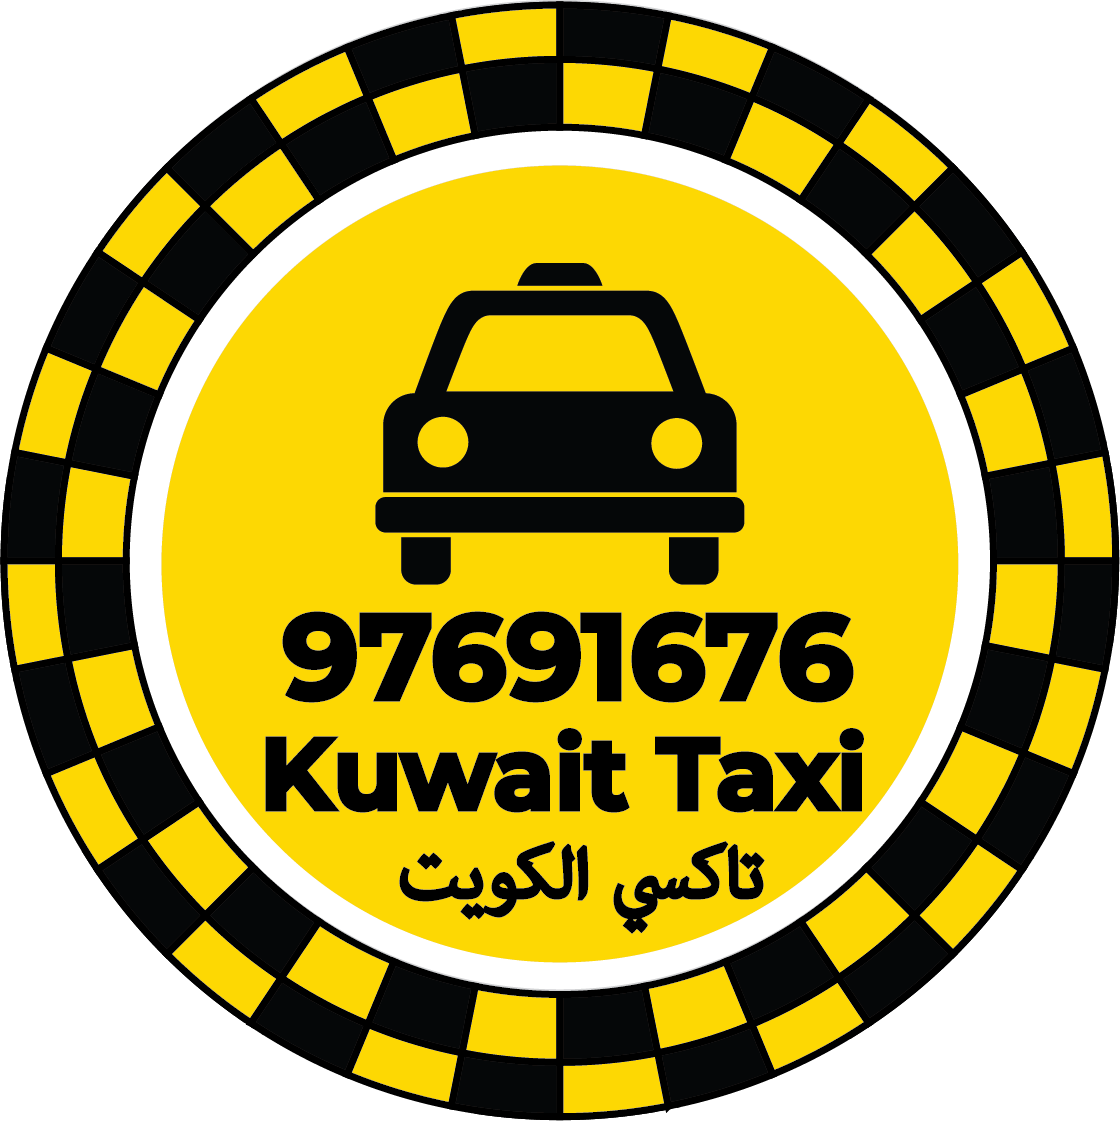 رقم تاكسي في جابر العلي - تاكسي جابرالعلي